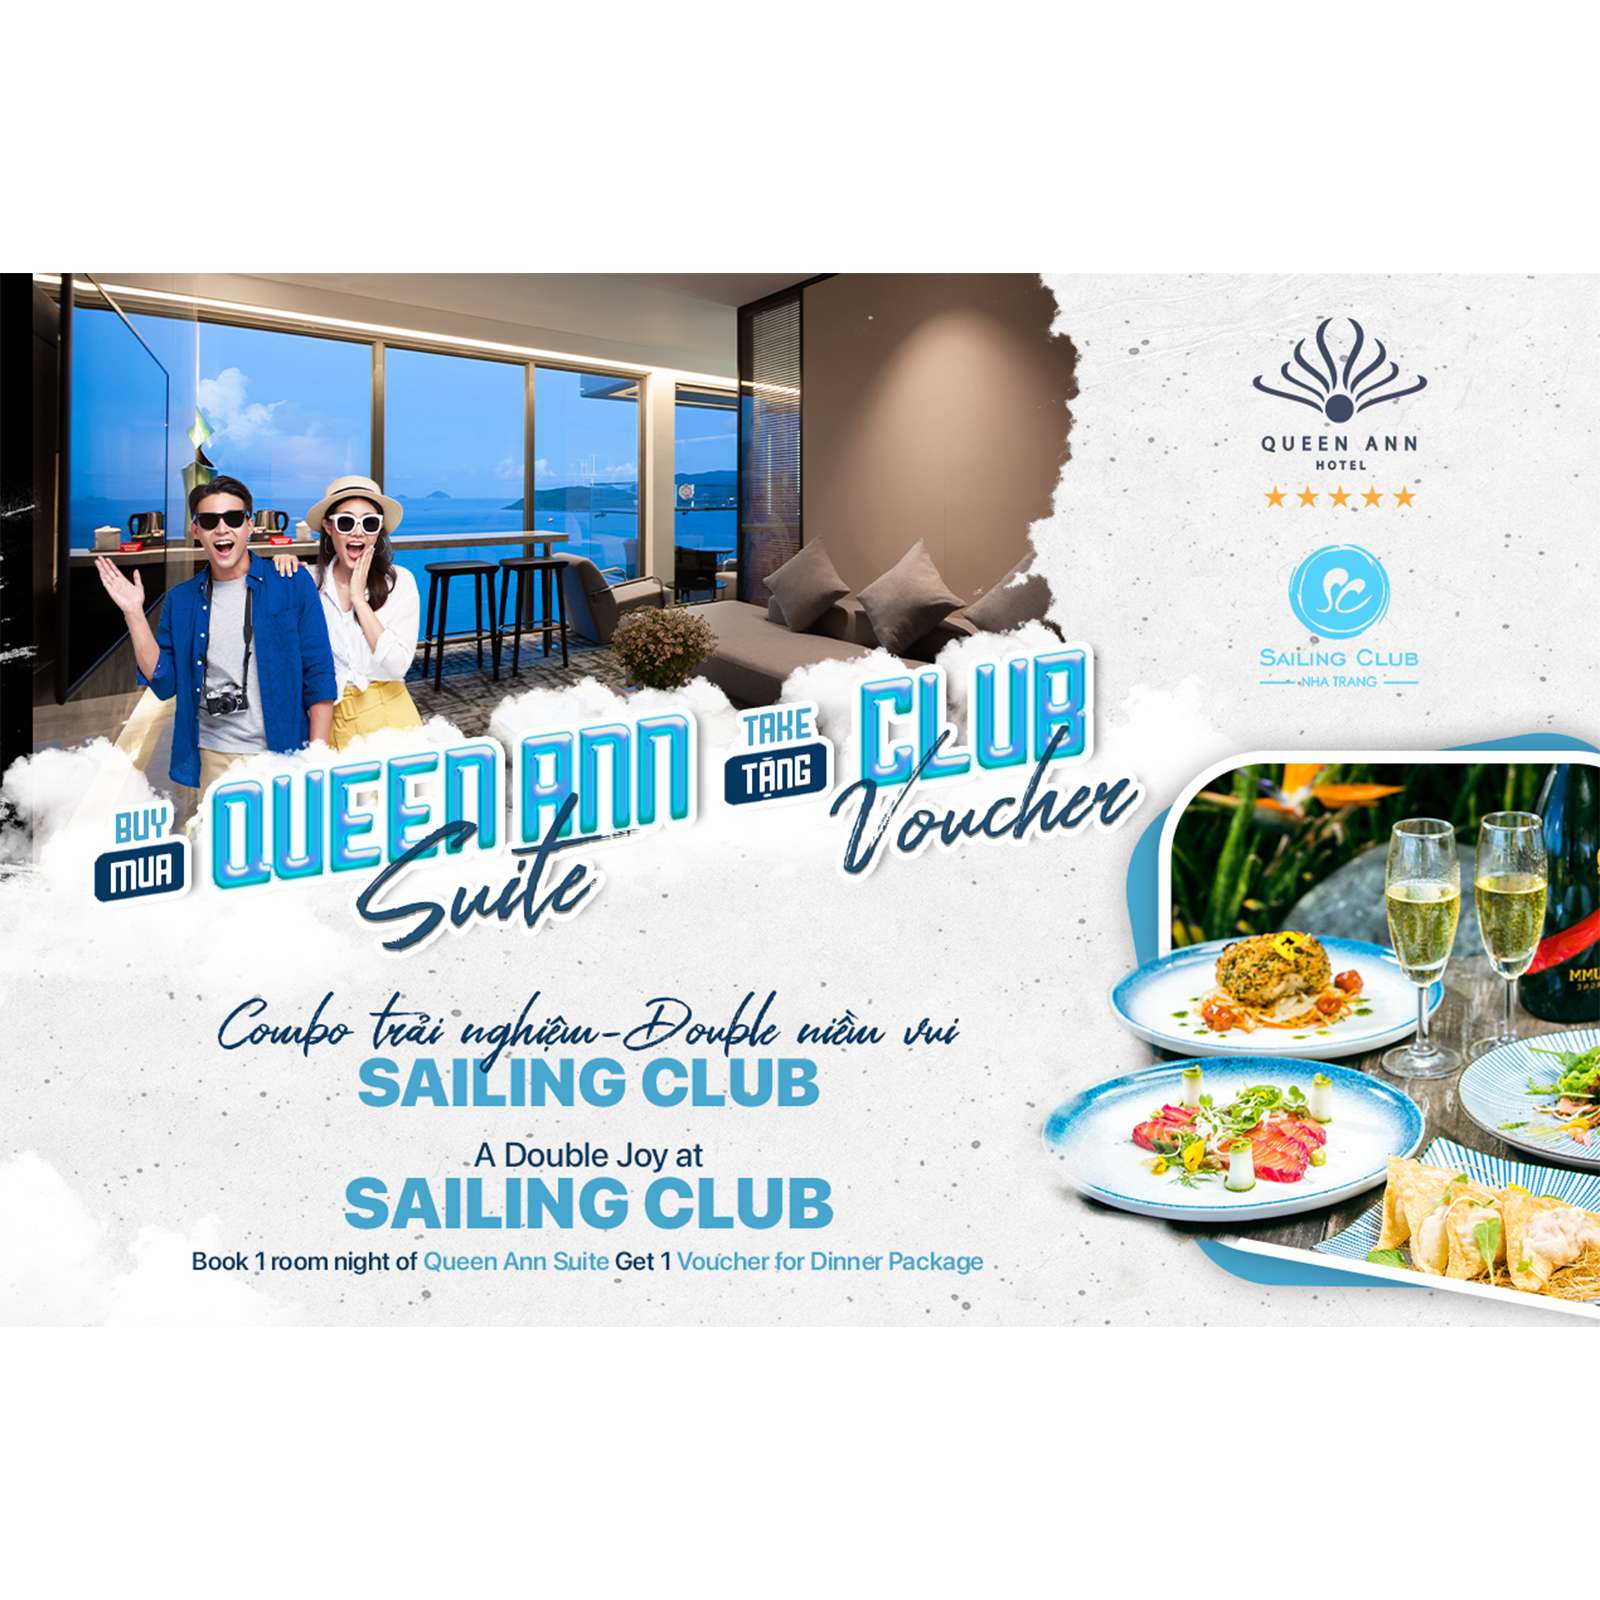 프리미엄 Queen Ann Suite에서 1박하고 호화로운 저녁 식사를 위한 Sailing Club 바우처를 받으세요.